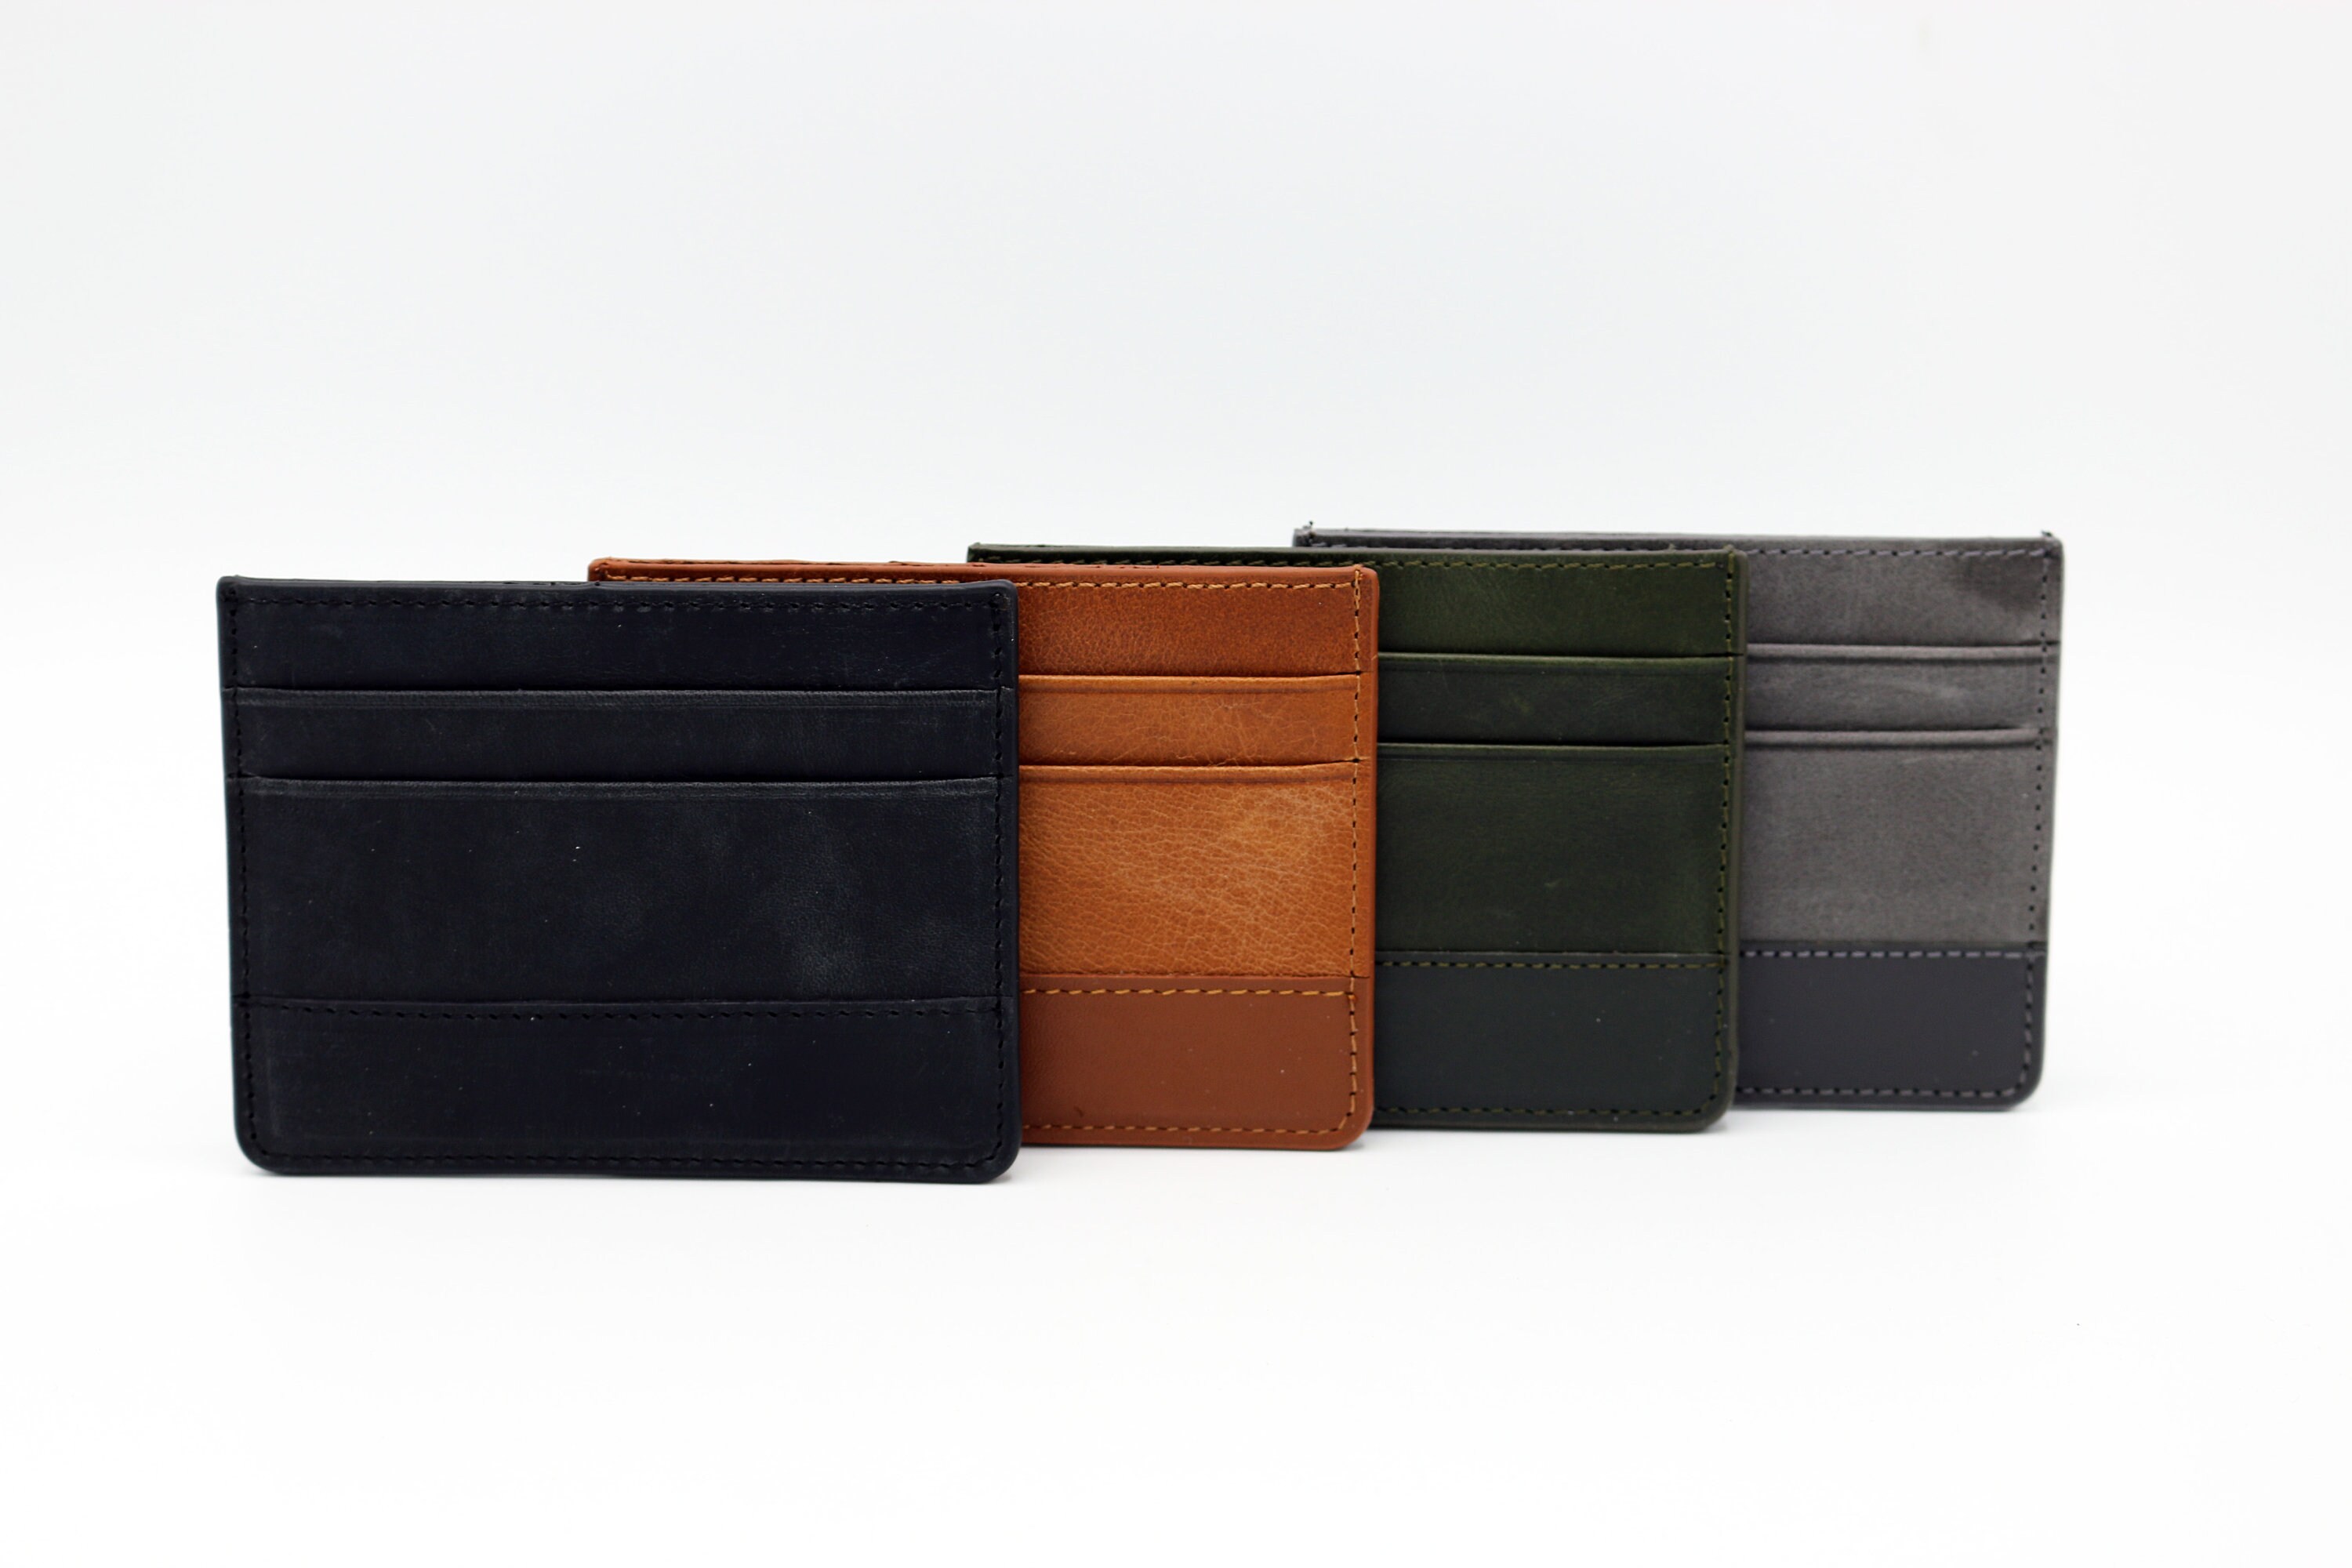 SLIM LEATHER WALLET, Men wallets, man leather wallet, minimalist wallet,  leather wallet, man leather cardholder, front pocket wallet, custom